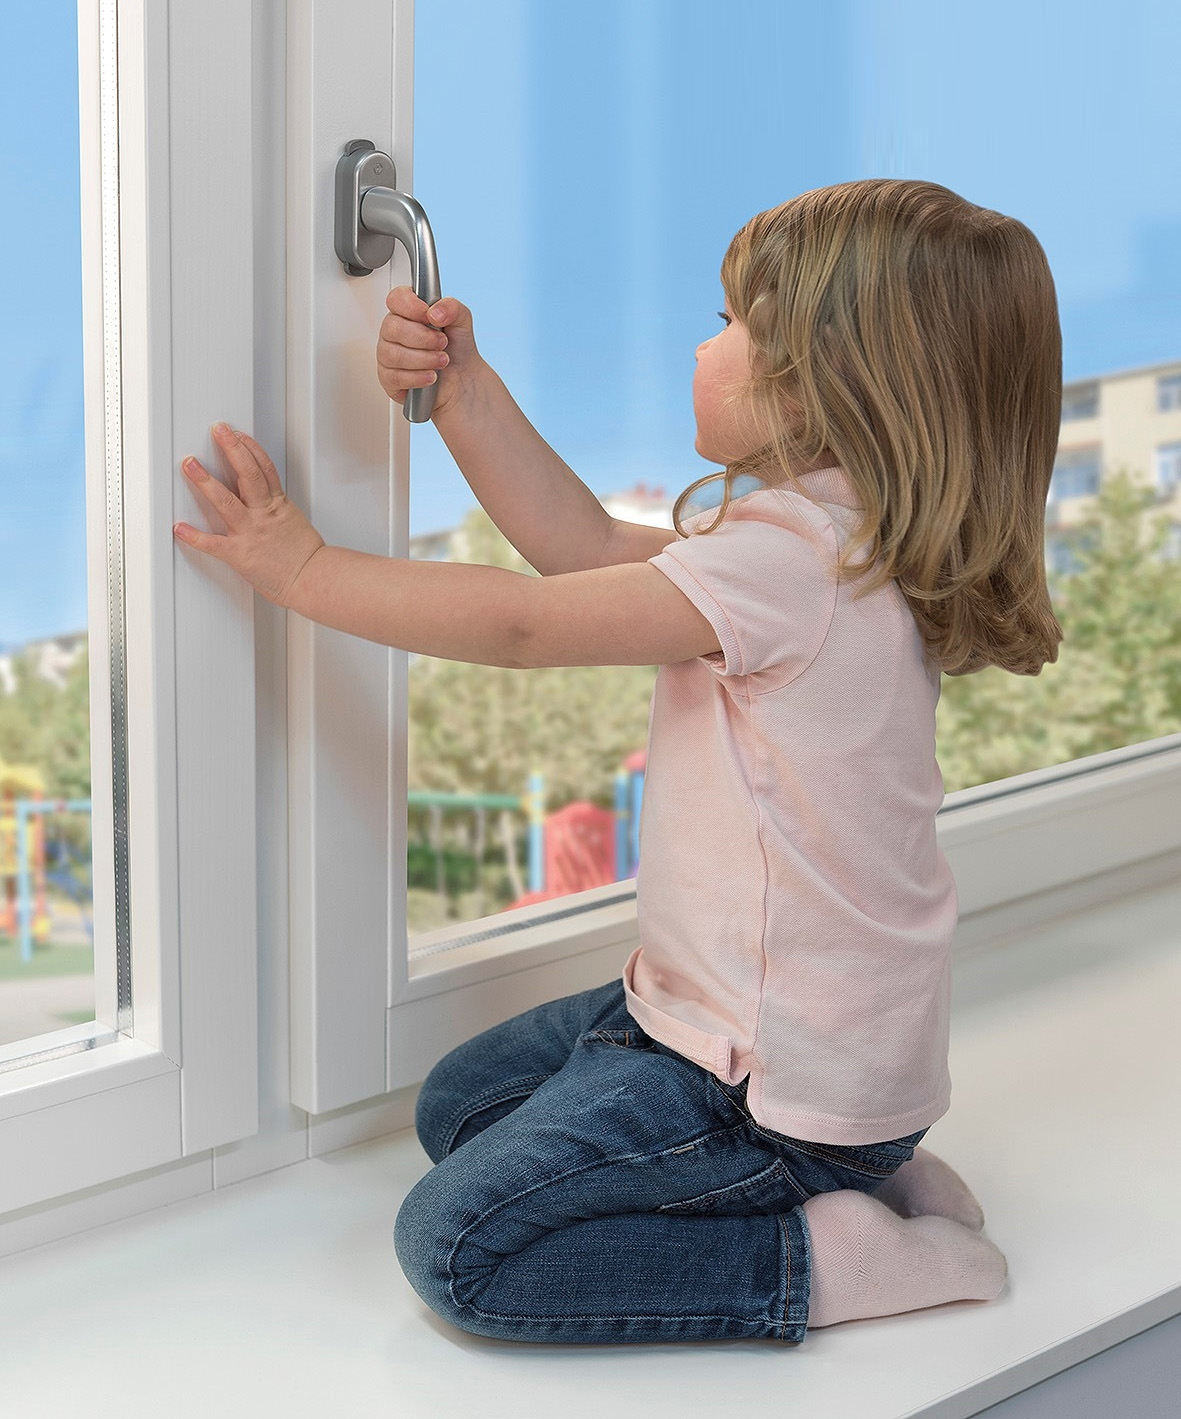 Защита от детей на окна. скажем «да!» безопасности, или почему так необходима защита от детей на окна замок на балконную пластиковую дверь от детей